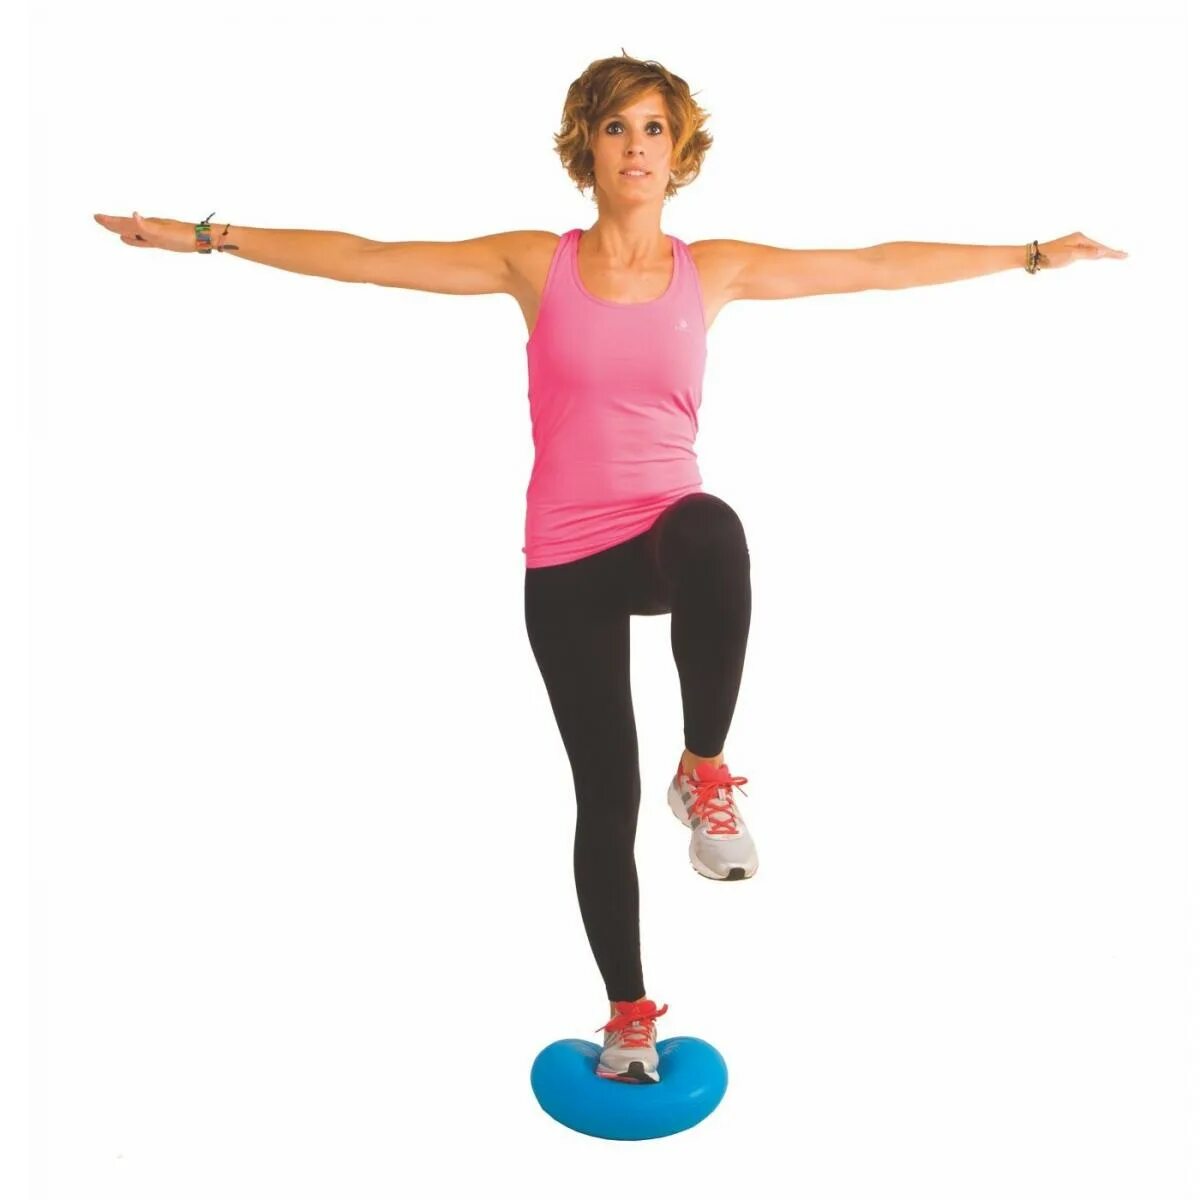 Сохранение равновесия гимнаста. Domyos подушка балансировочная упражнения. Надувной балансир для гимнастики. Упражнения на балансировочной платформе для равновесия. Упражнения на балансировочной доске для фитнеса.